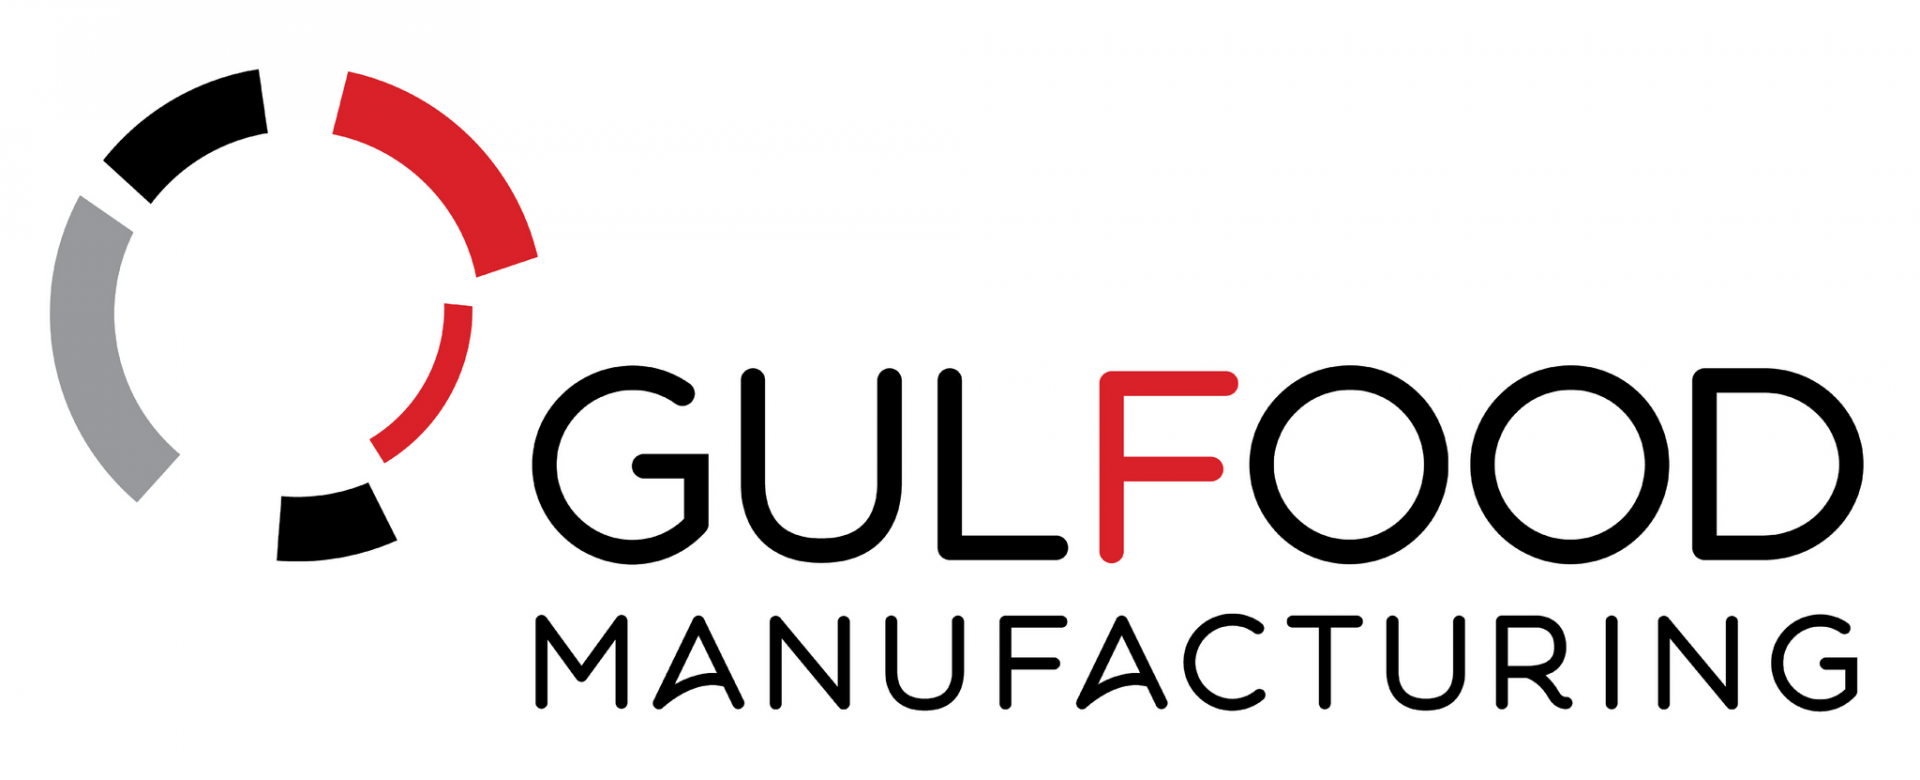 Fabricação da Gulfood em Dubai 2019